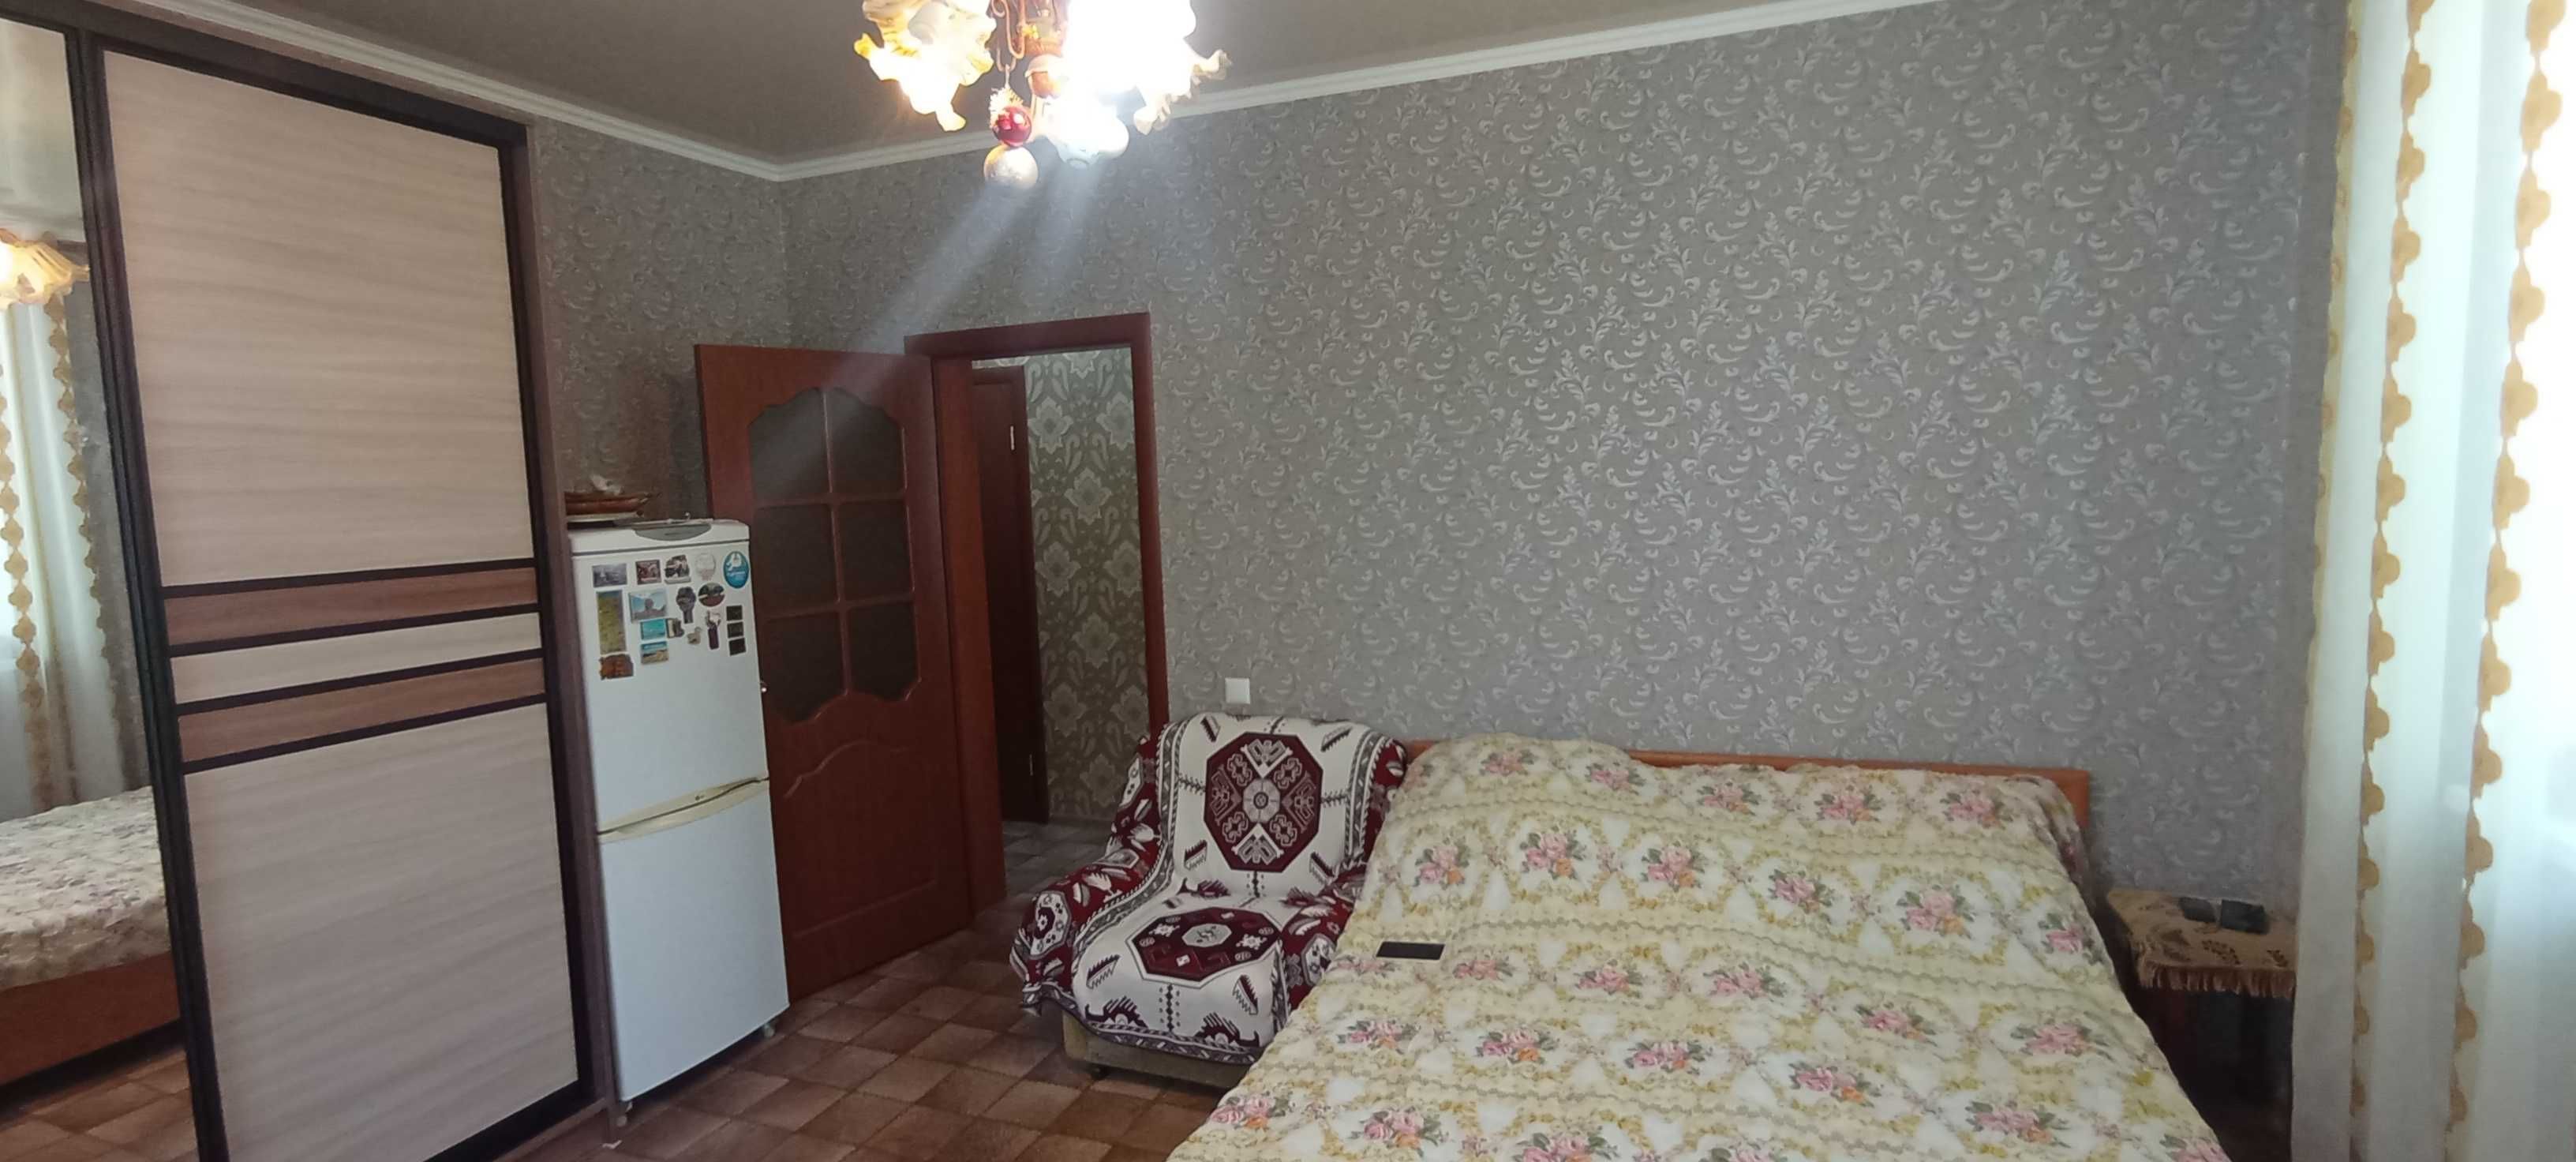 ПРОДАМ 3-х комнатную квартиру болгарку на Востоке 2/2 (блочный дом)